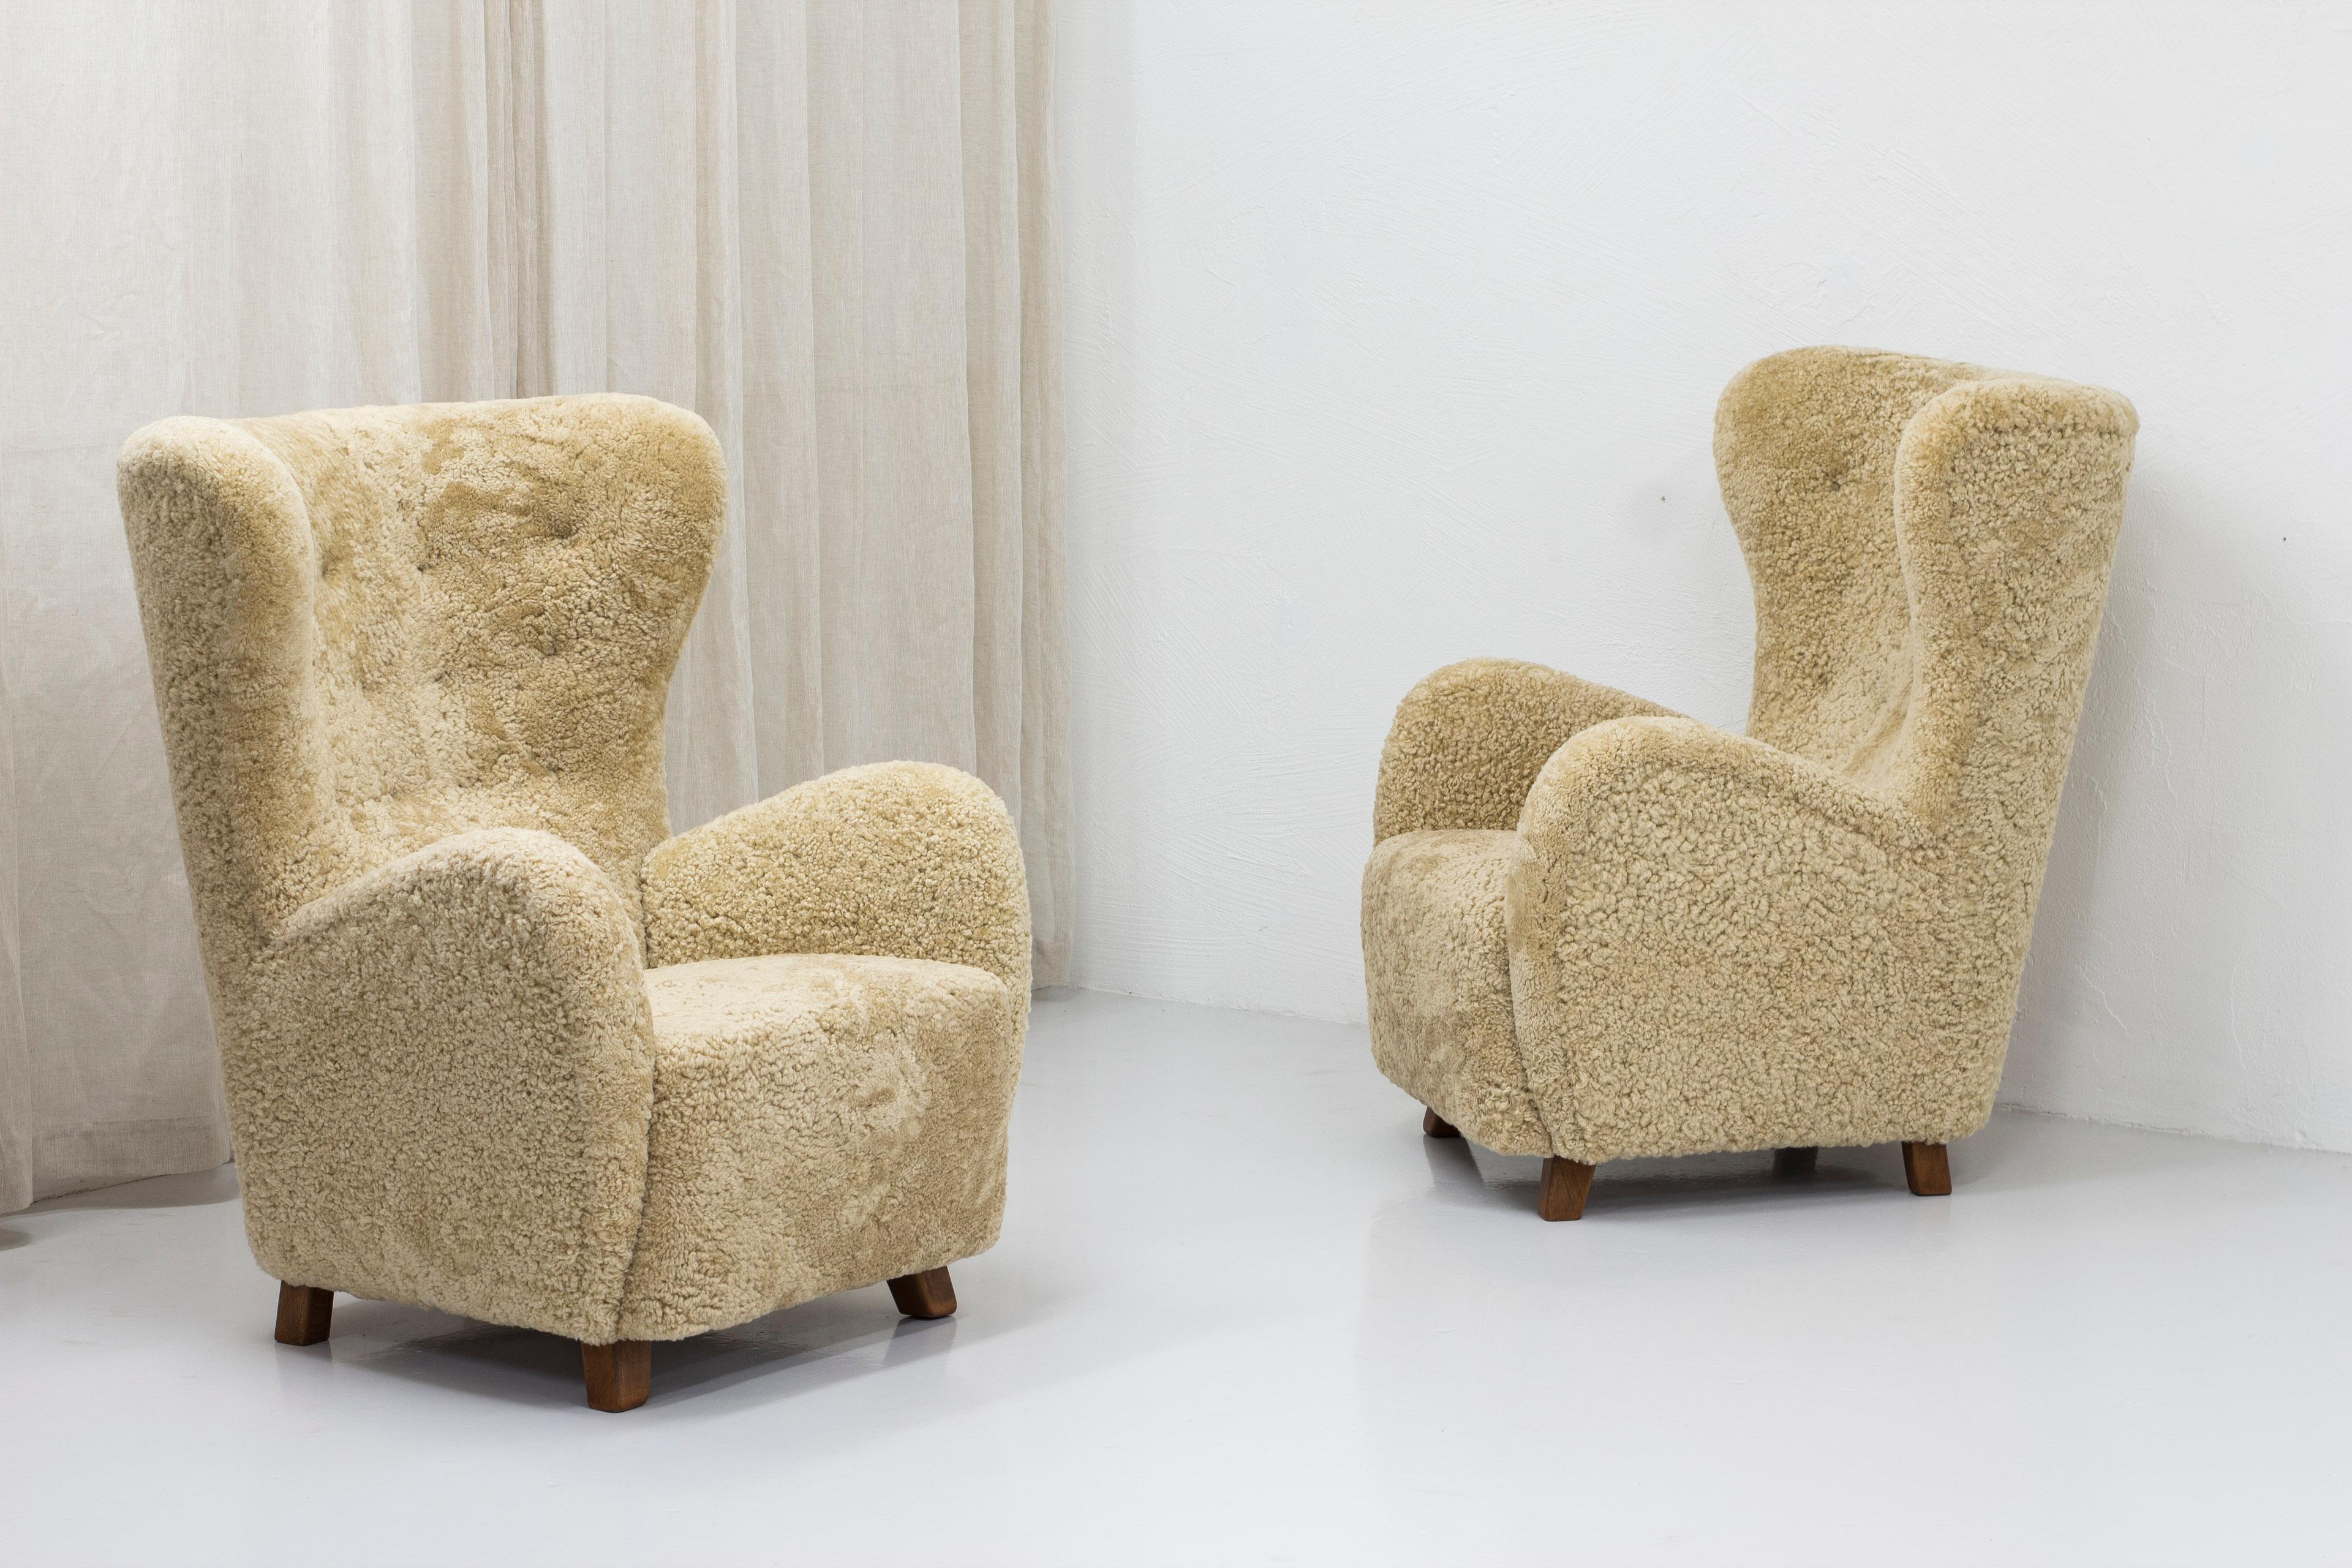 Paire de grands fauteuils modernes danois à haut dossier. Conçue et fabriquée au Danemark dans les années 1940-50. Grandes et très confortables. Les chaises ont été retapissées en peau de mouton de haute qualité dans une couleur beige/blonde claire.